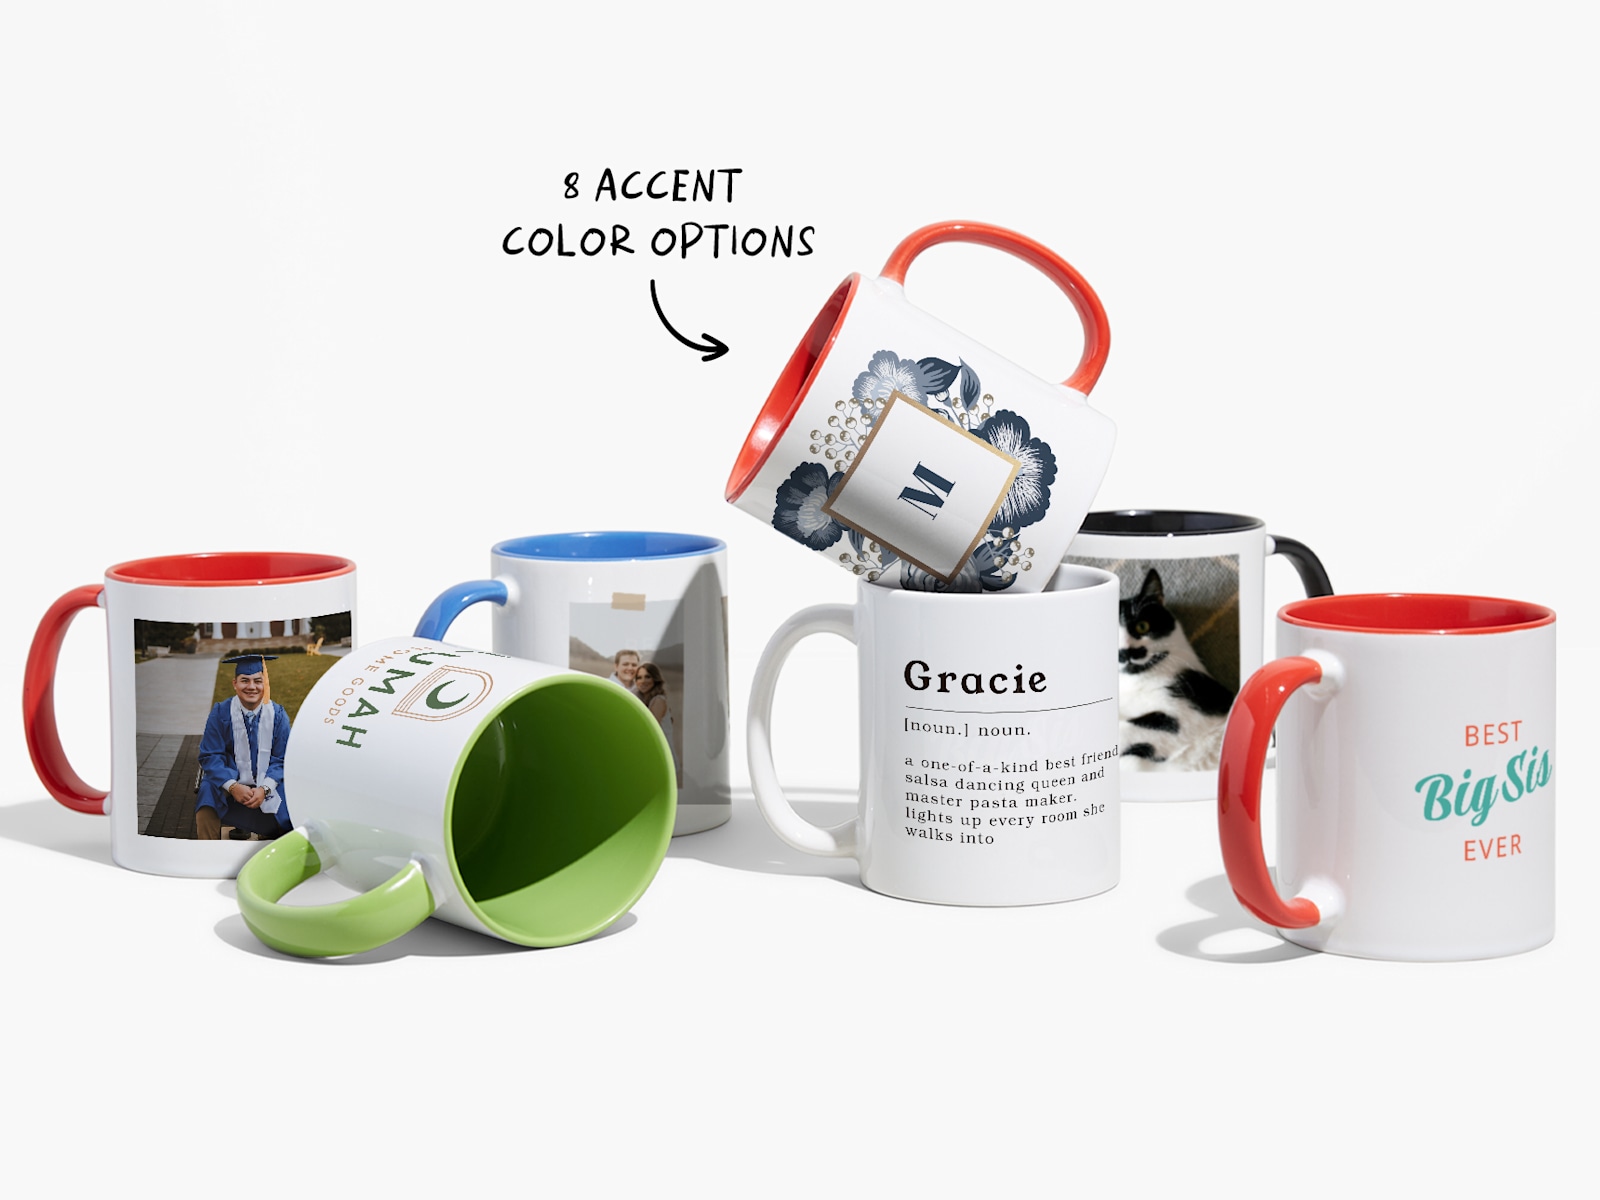 Custom Coffee Mugs Online, Personalised Cups